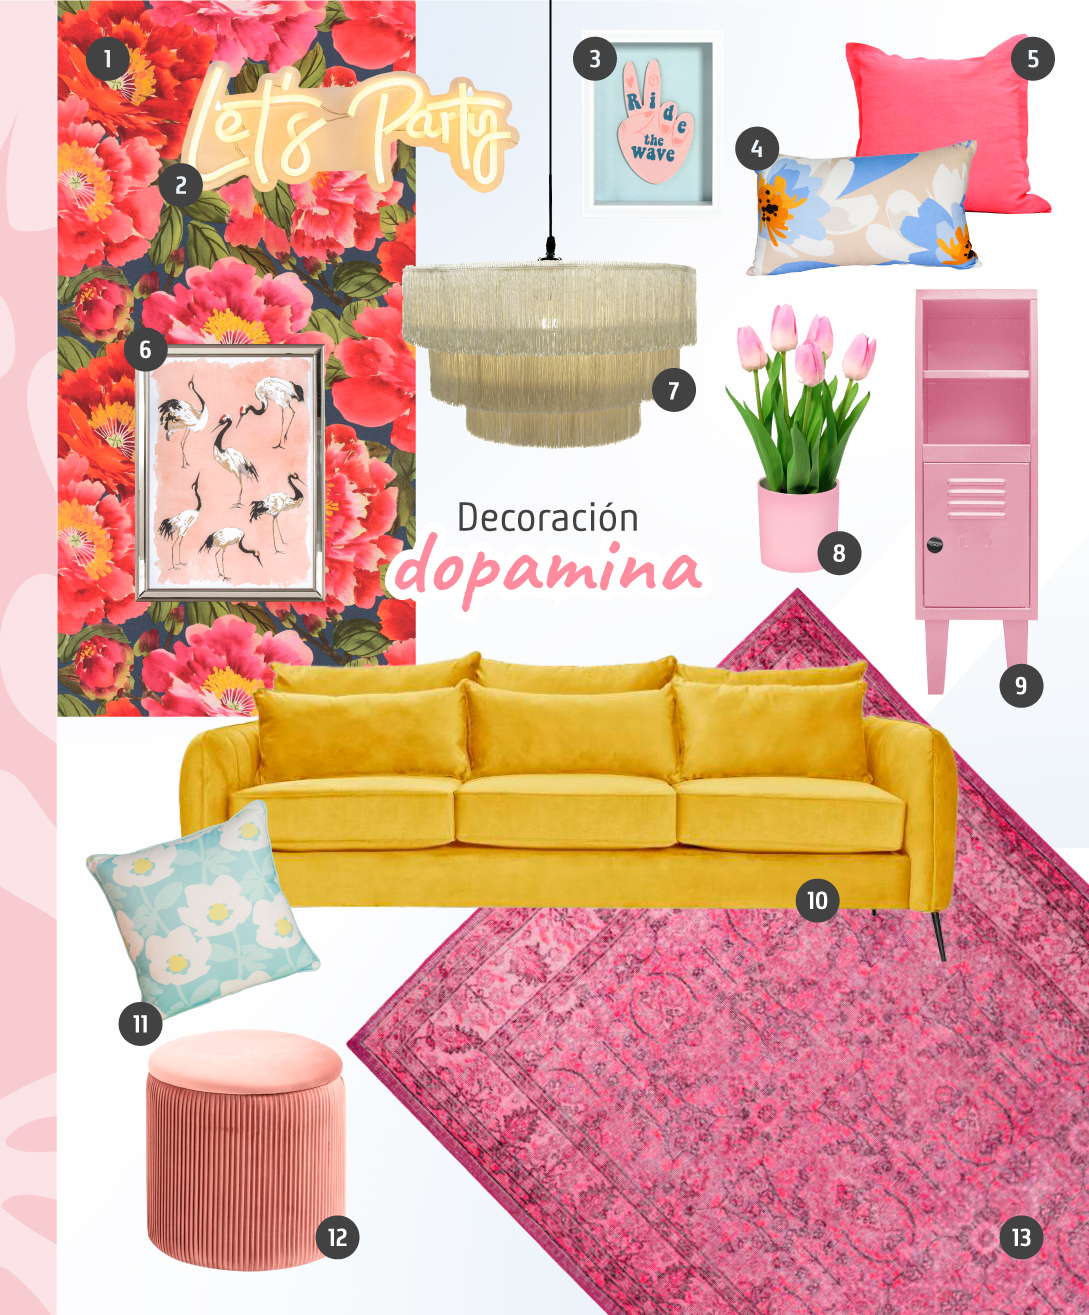 Moodboard de decoración dopamina, incluye productos como sofá amarillo de ttres cuerpos, alfombra kilim rosa, cojin con flores, pouf rosado, lámpara de techo, locker, plantas y cuadros. Todo disponible en Sodimac